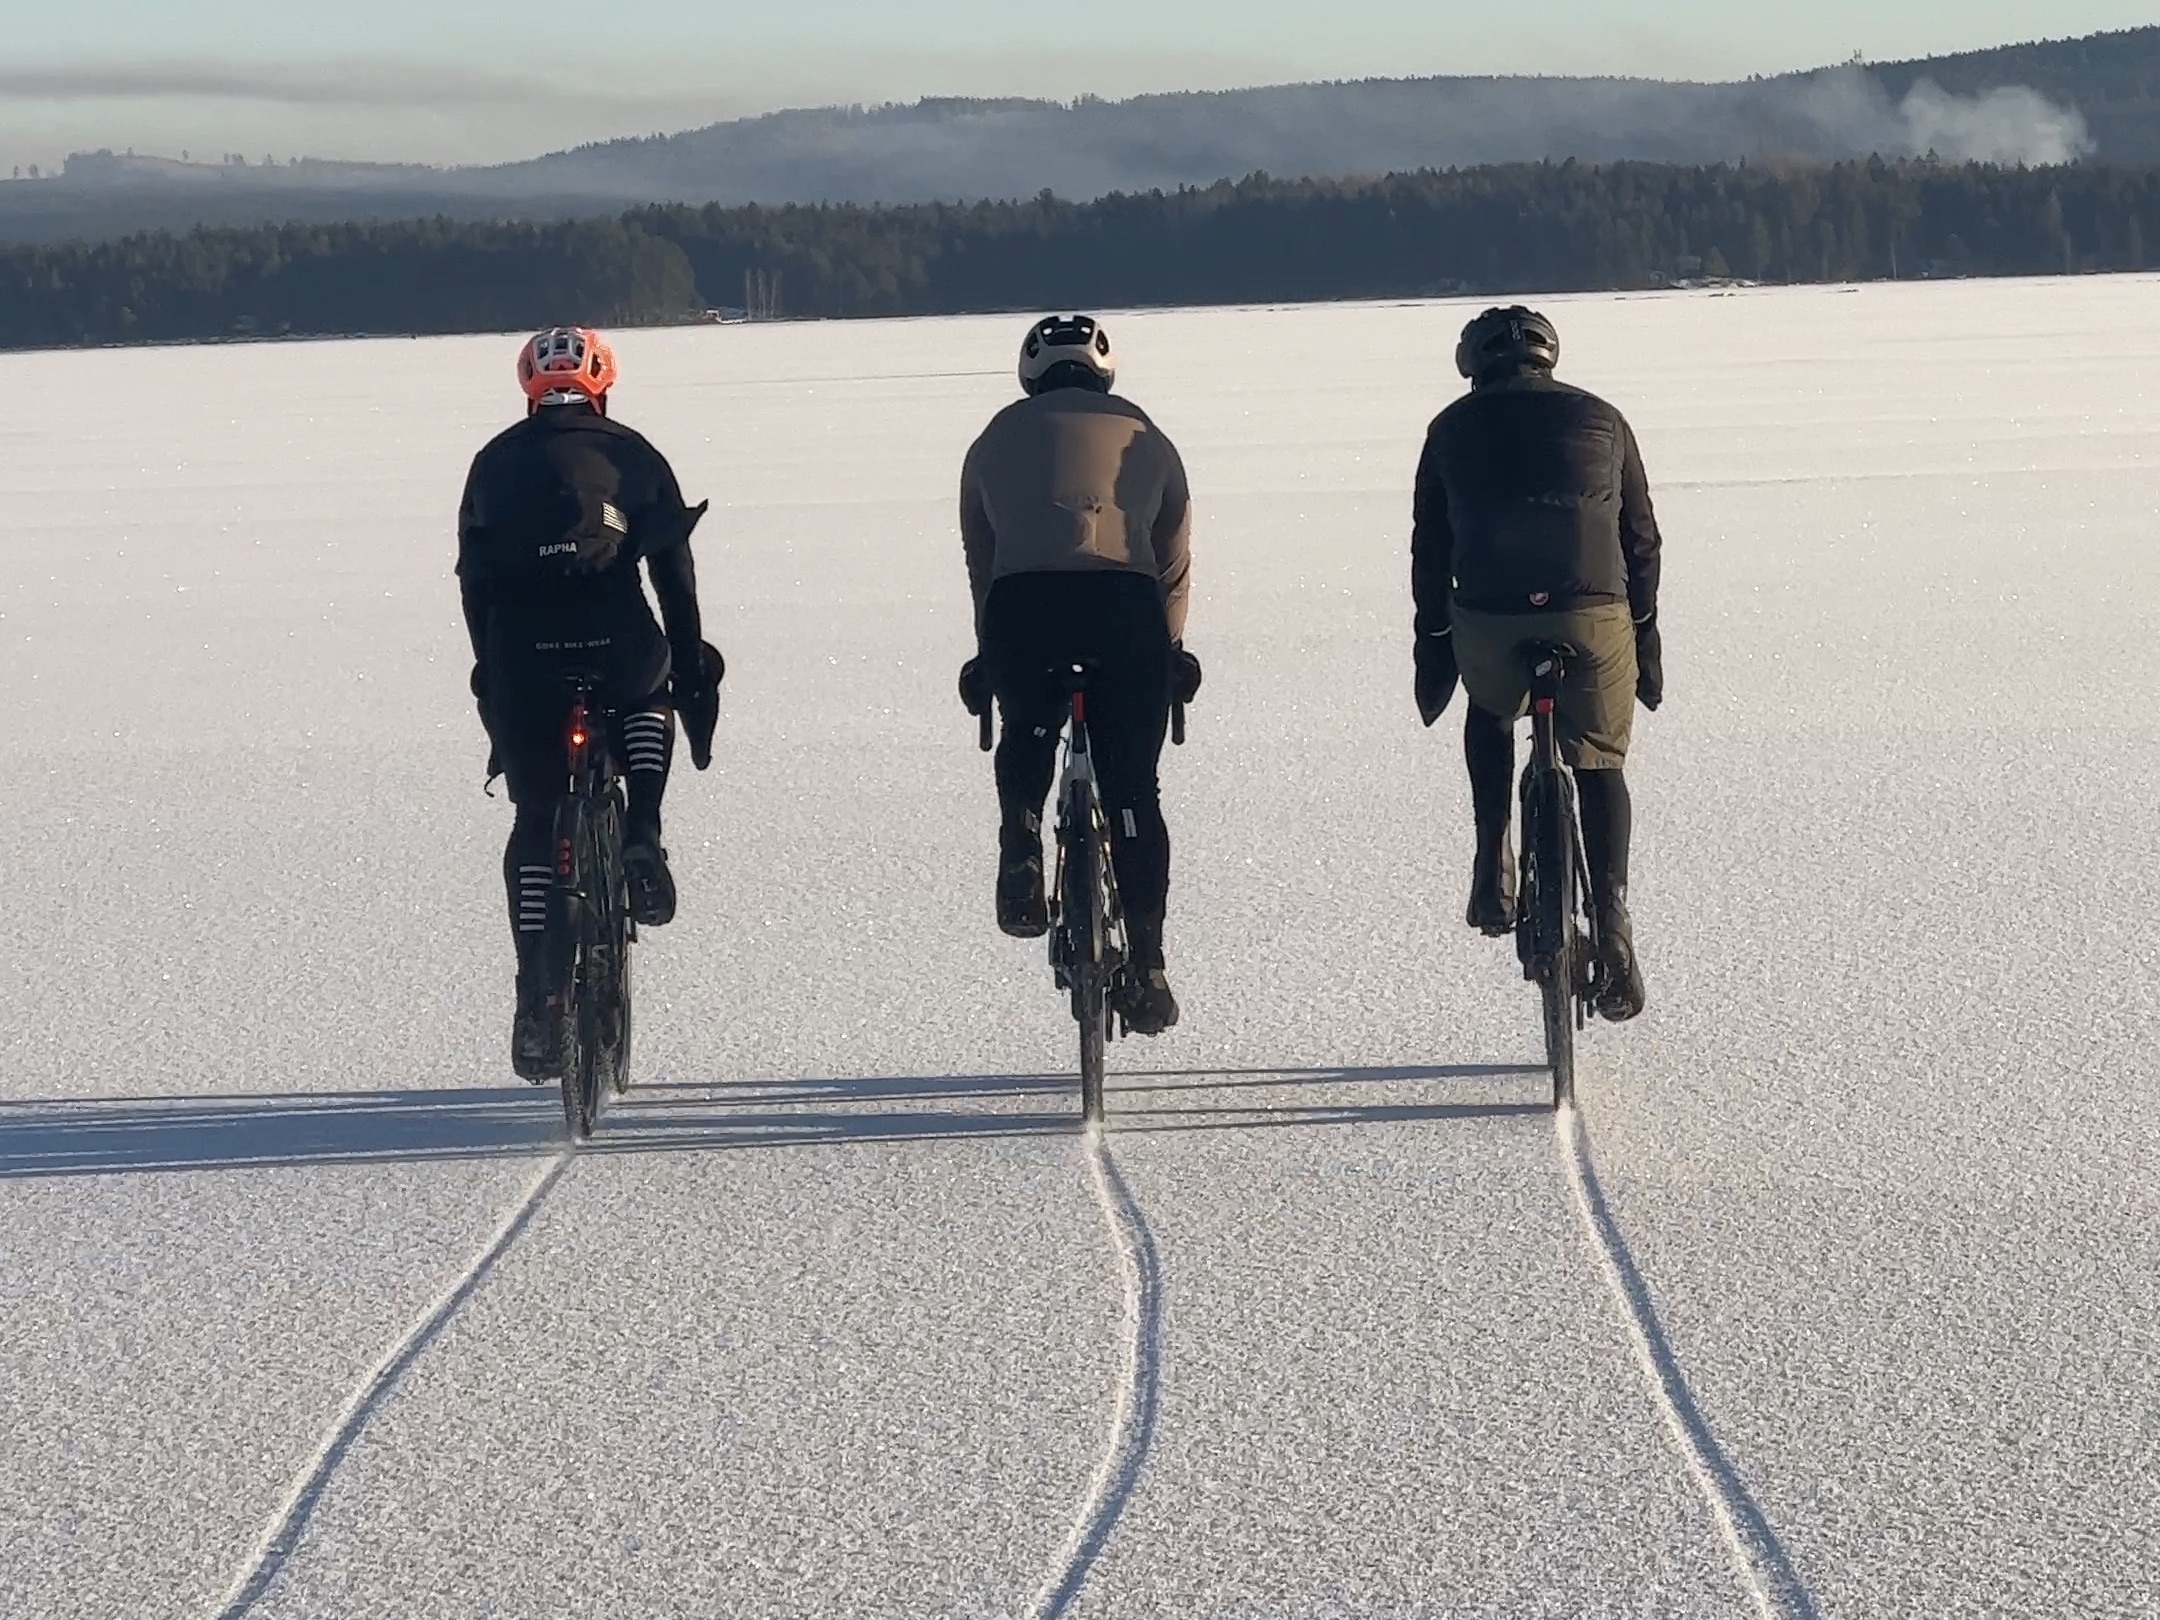 ”Med lite säkerhetstänk är det bland det mest frihetsgörande som man uppleva den tiden på året”, menar Jesper om att cykla på en snötäckt sjö.